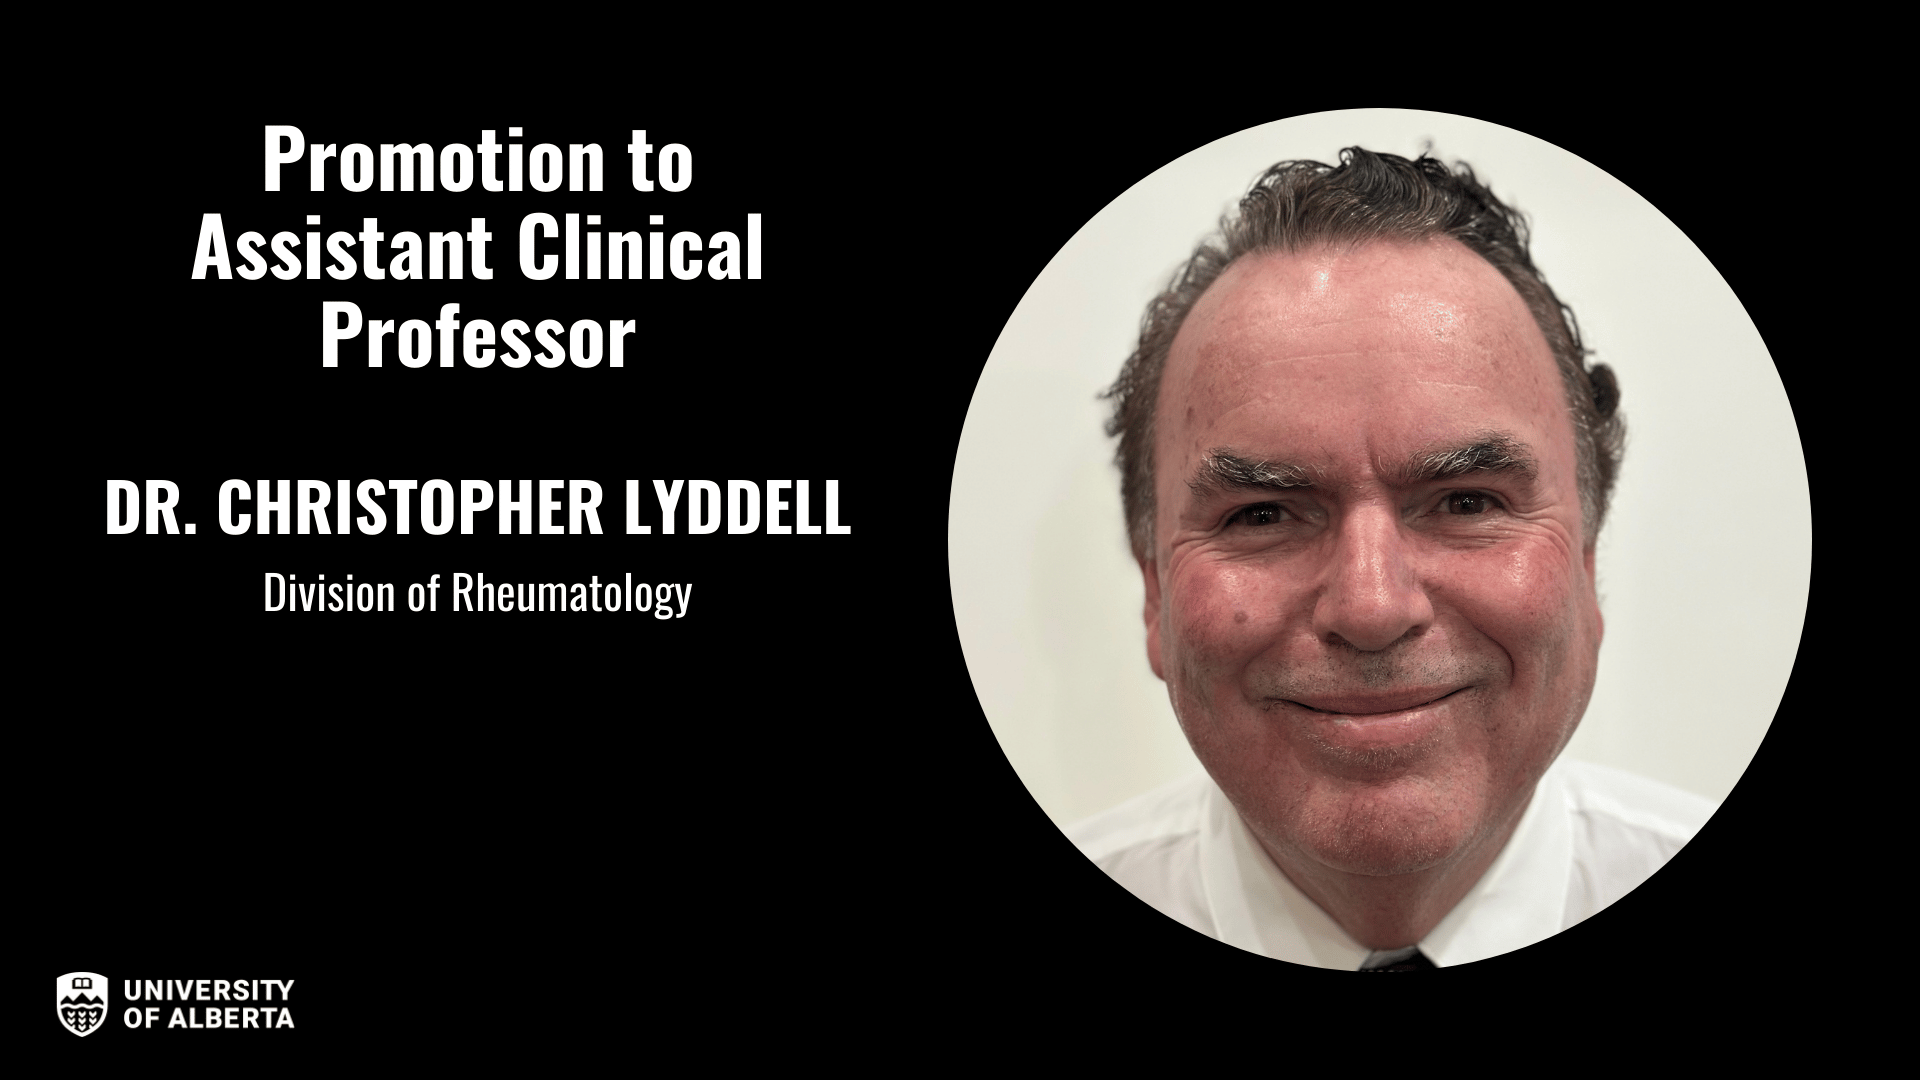 Dr. Christopher Lyddell